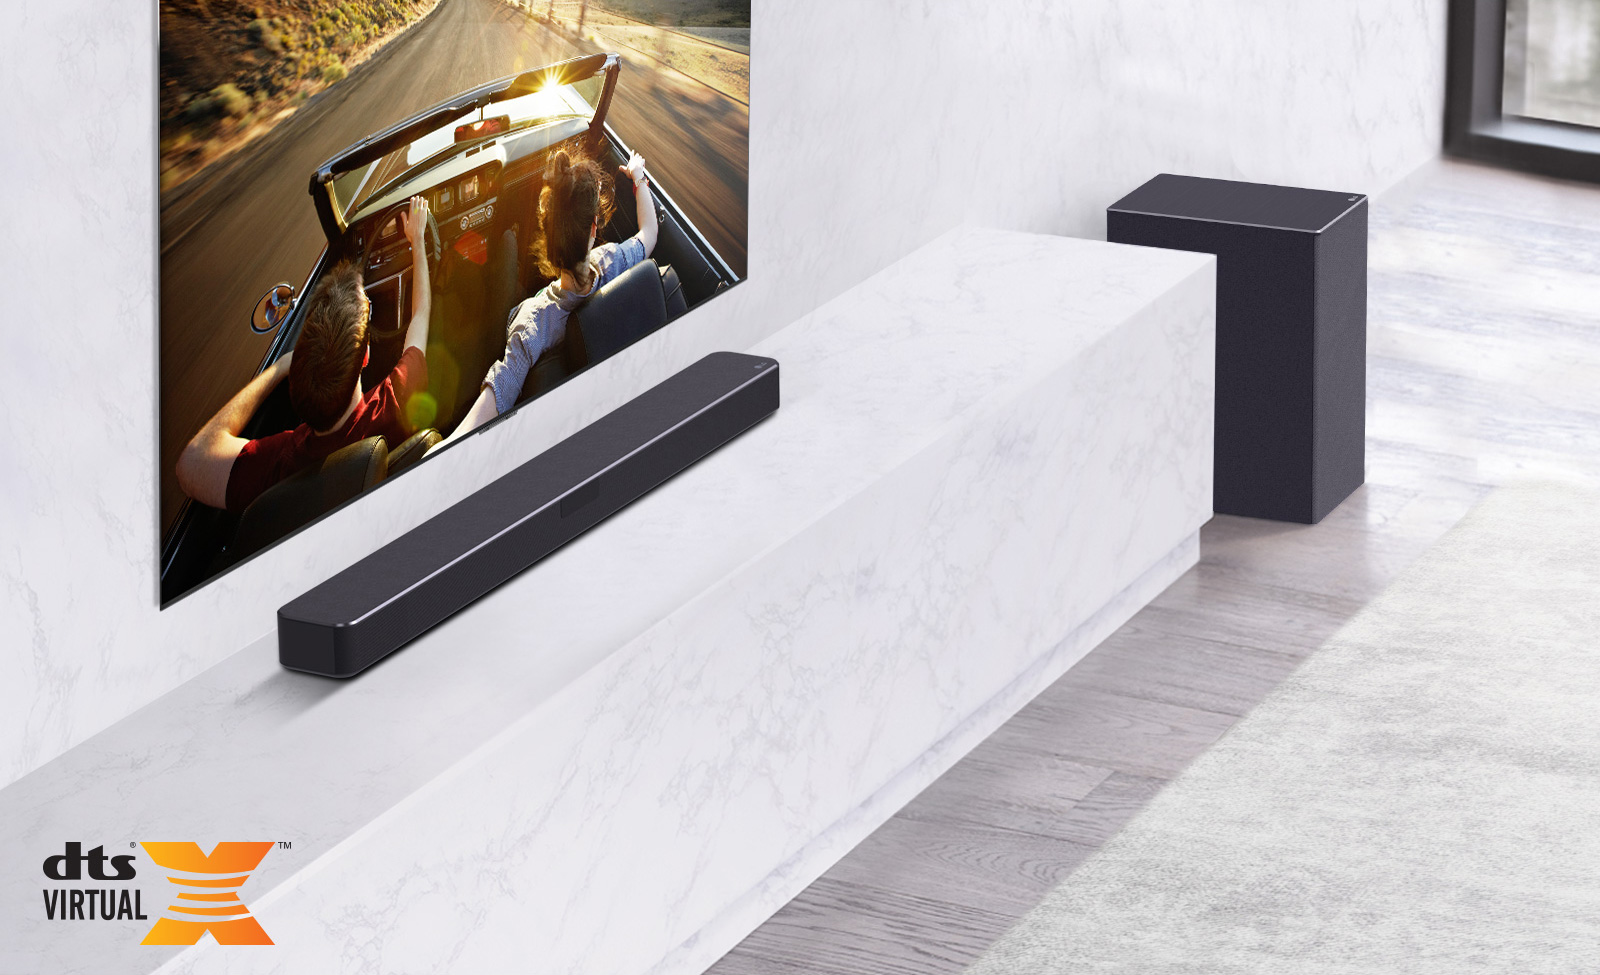 Le téléviseur est au mur, la barre de son LG est en bas sur une étagère en marbre blanc avec un caisson de basses à droite. Le téléviseur montre un couple dans une voiture.